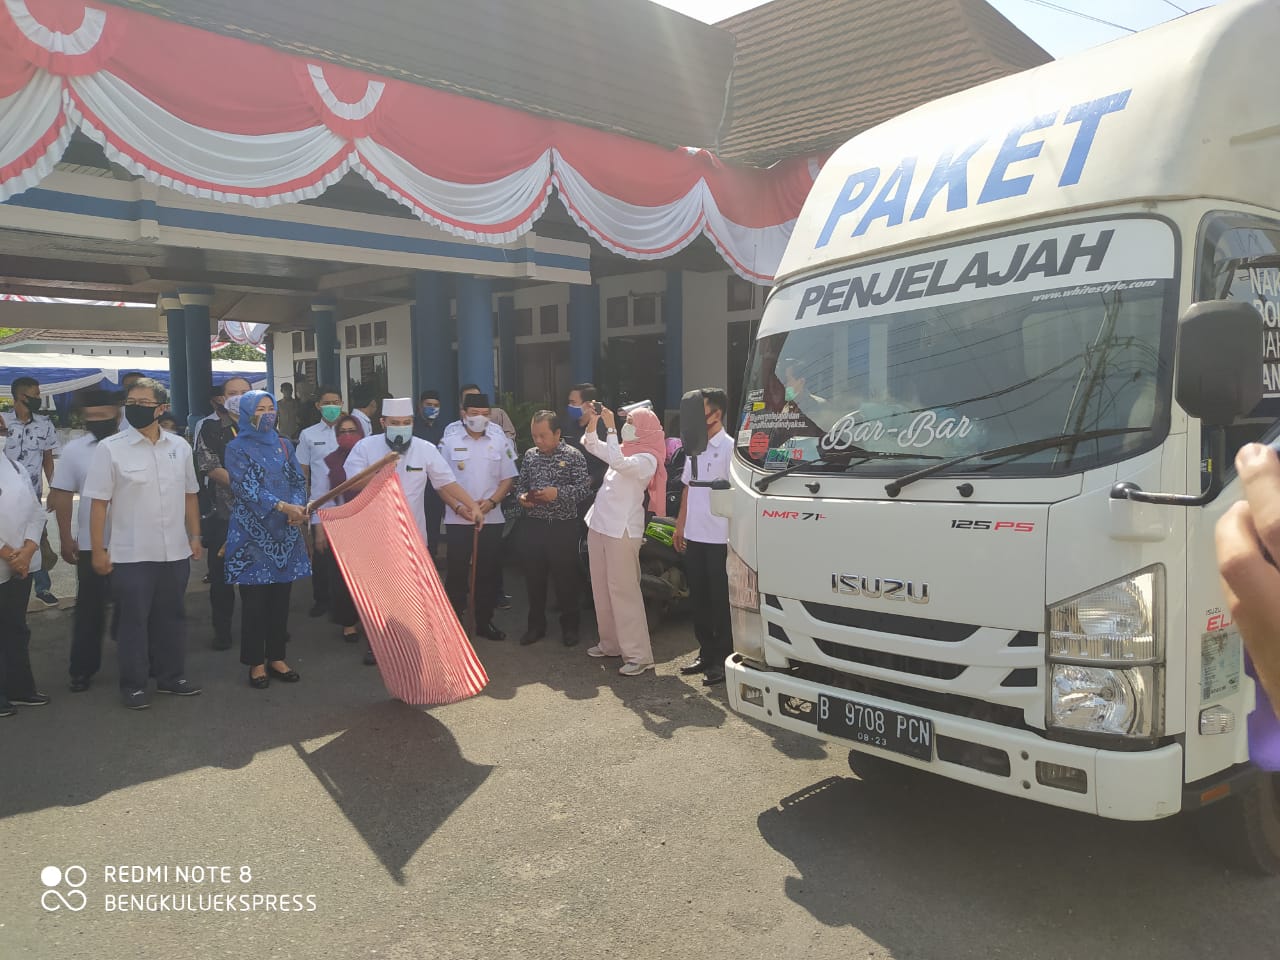 Walikota Bengkulu Terima Ribuan Paket Balasa dari Kemenparekraf untuk Pelaku Usaha Terdampak Covid-19